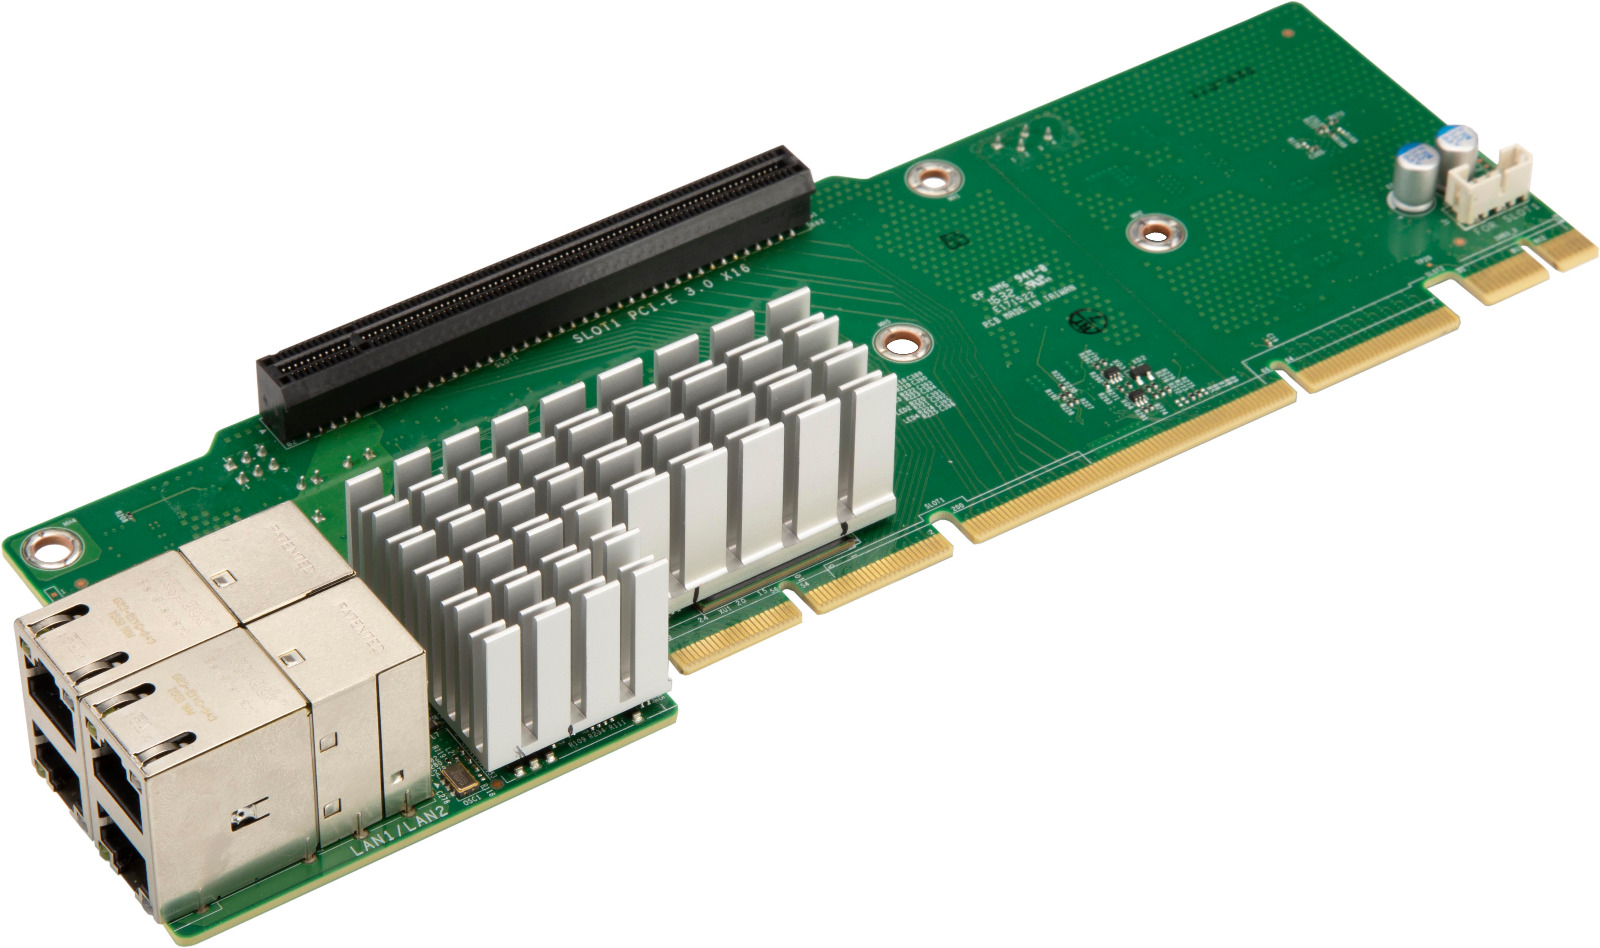 Supermicro AOC-2UR66-I4XTF 2U Ultra 4-port 10G RJ45,2x PCI-E 3.0 x16,Intel XL710